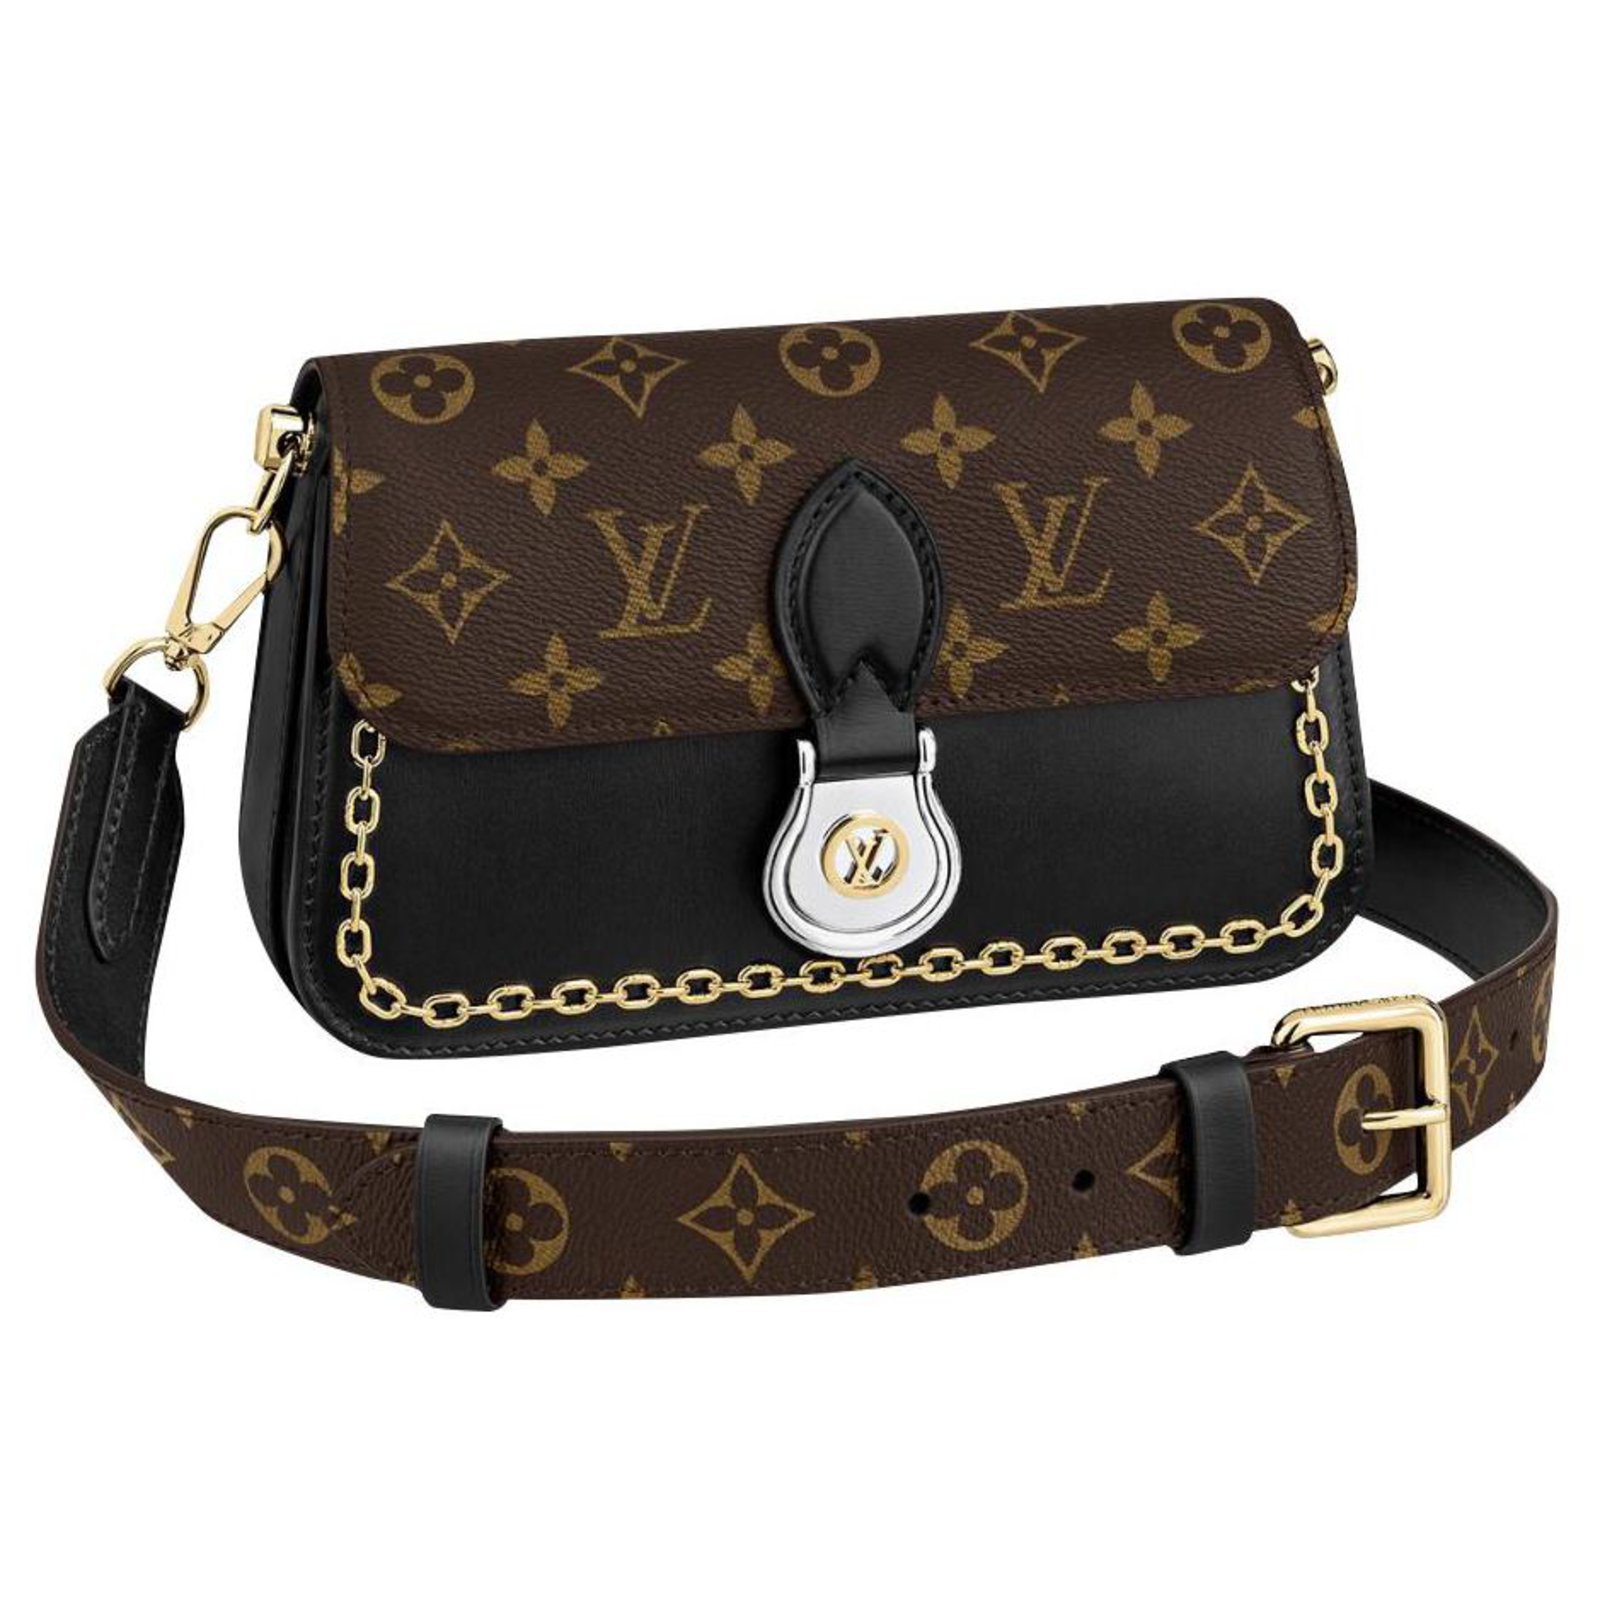 Saint cloud leather handbag Louis Vuitton Black in Leather - 37947012